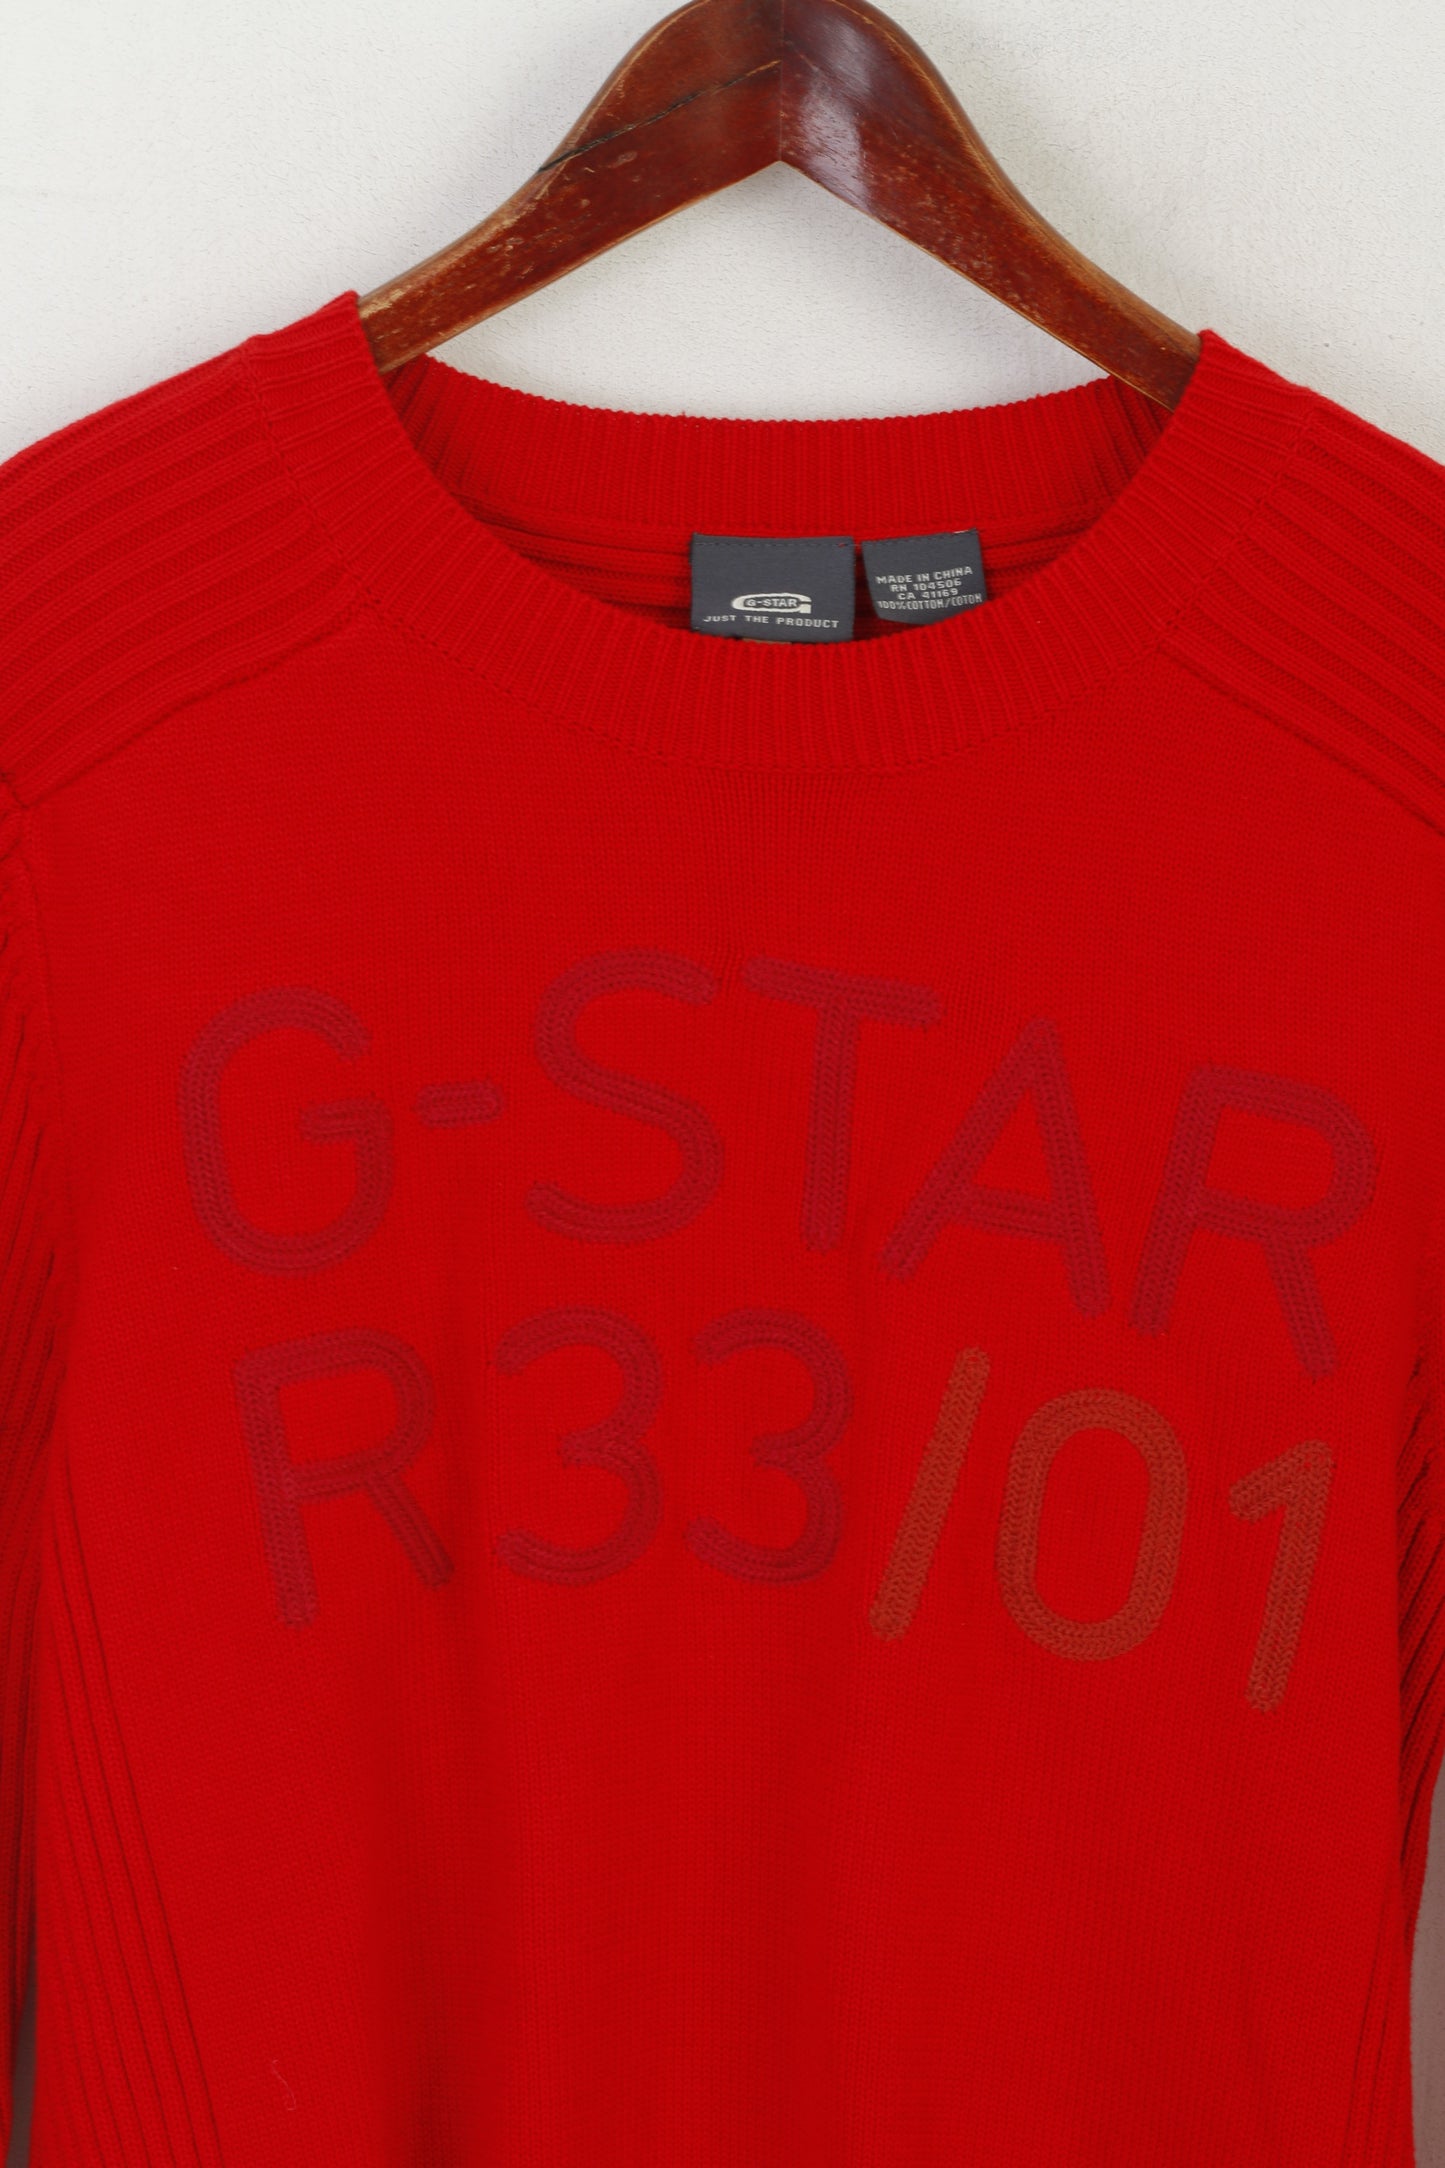 Maglione G-Star Raw Men L (M) Maglione rosso in cotone elasticizzato girocollo con logo classico